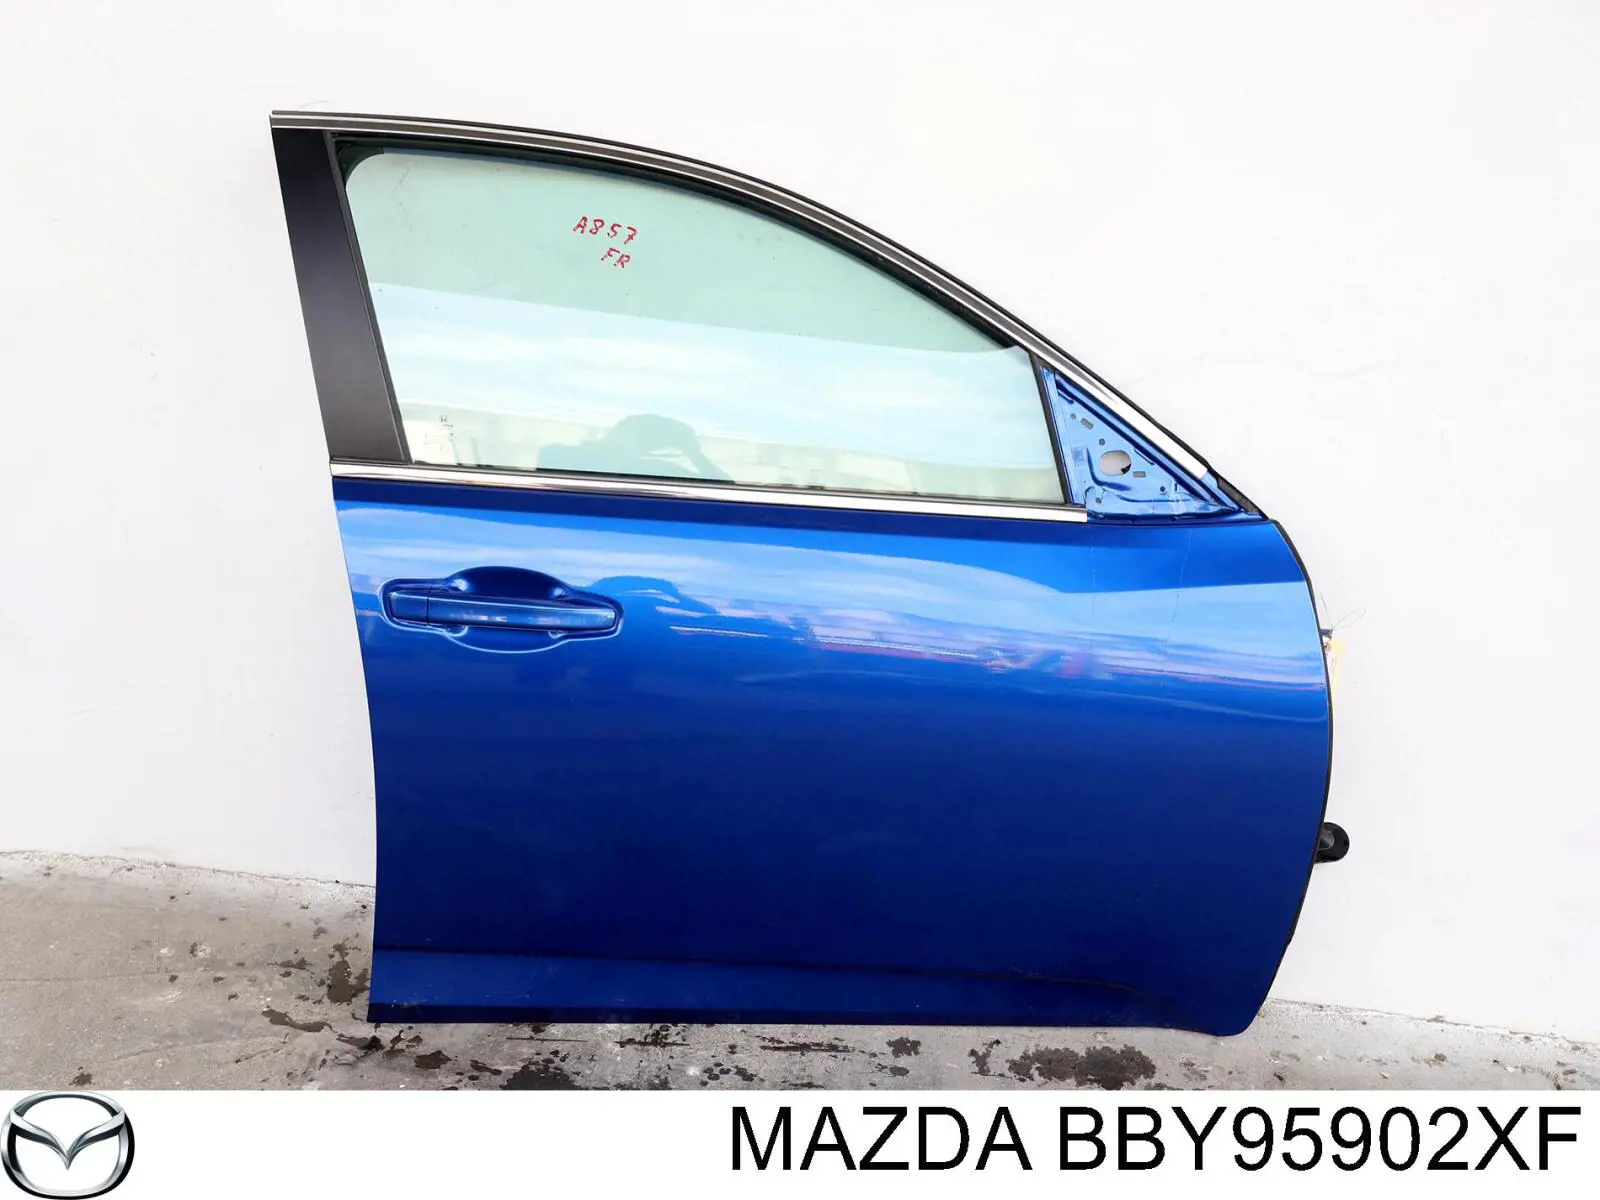 BBY95902XF Mazda puerta delantera izquierda